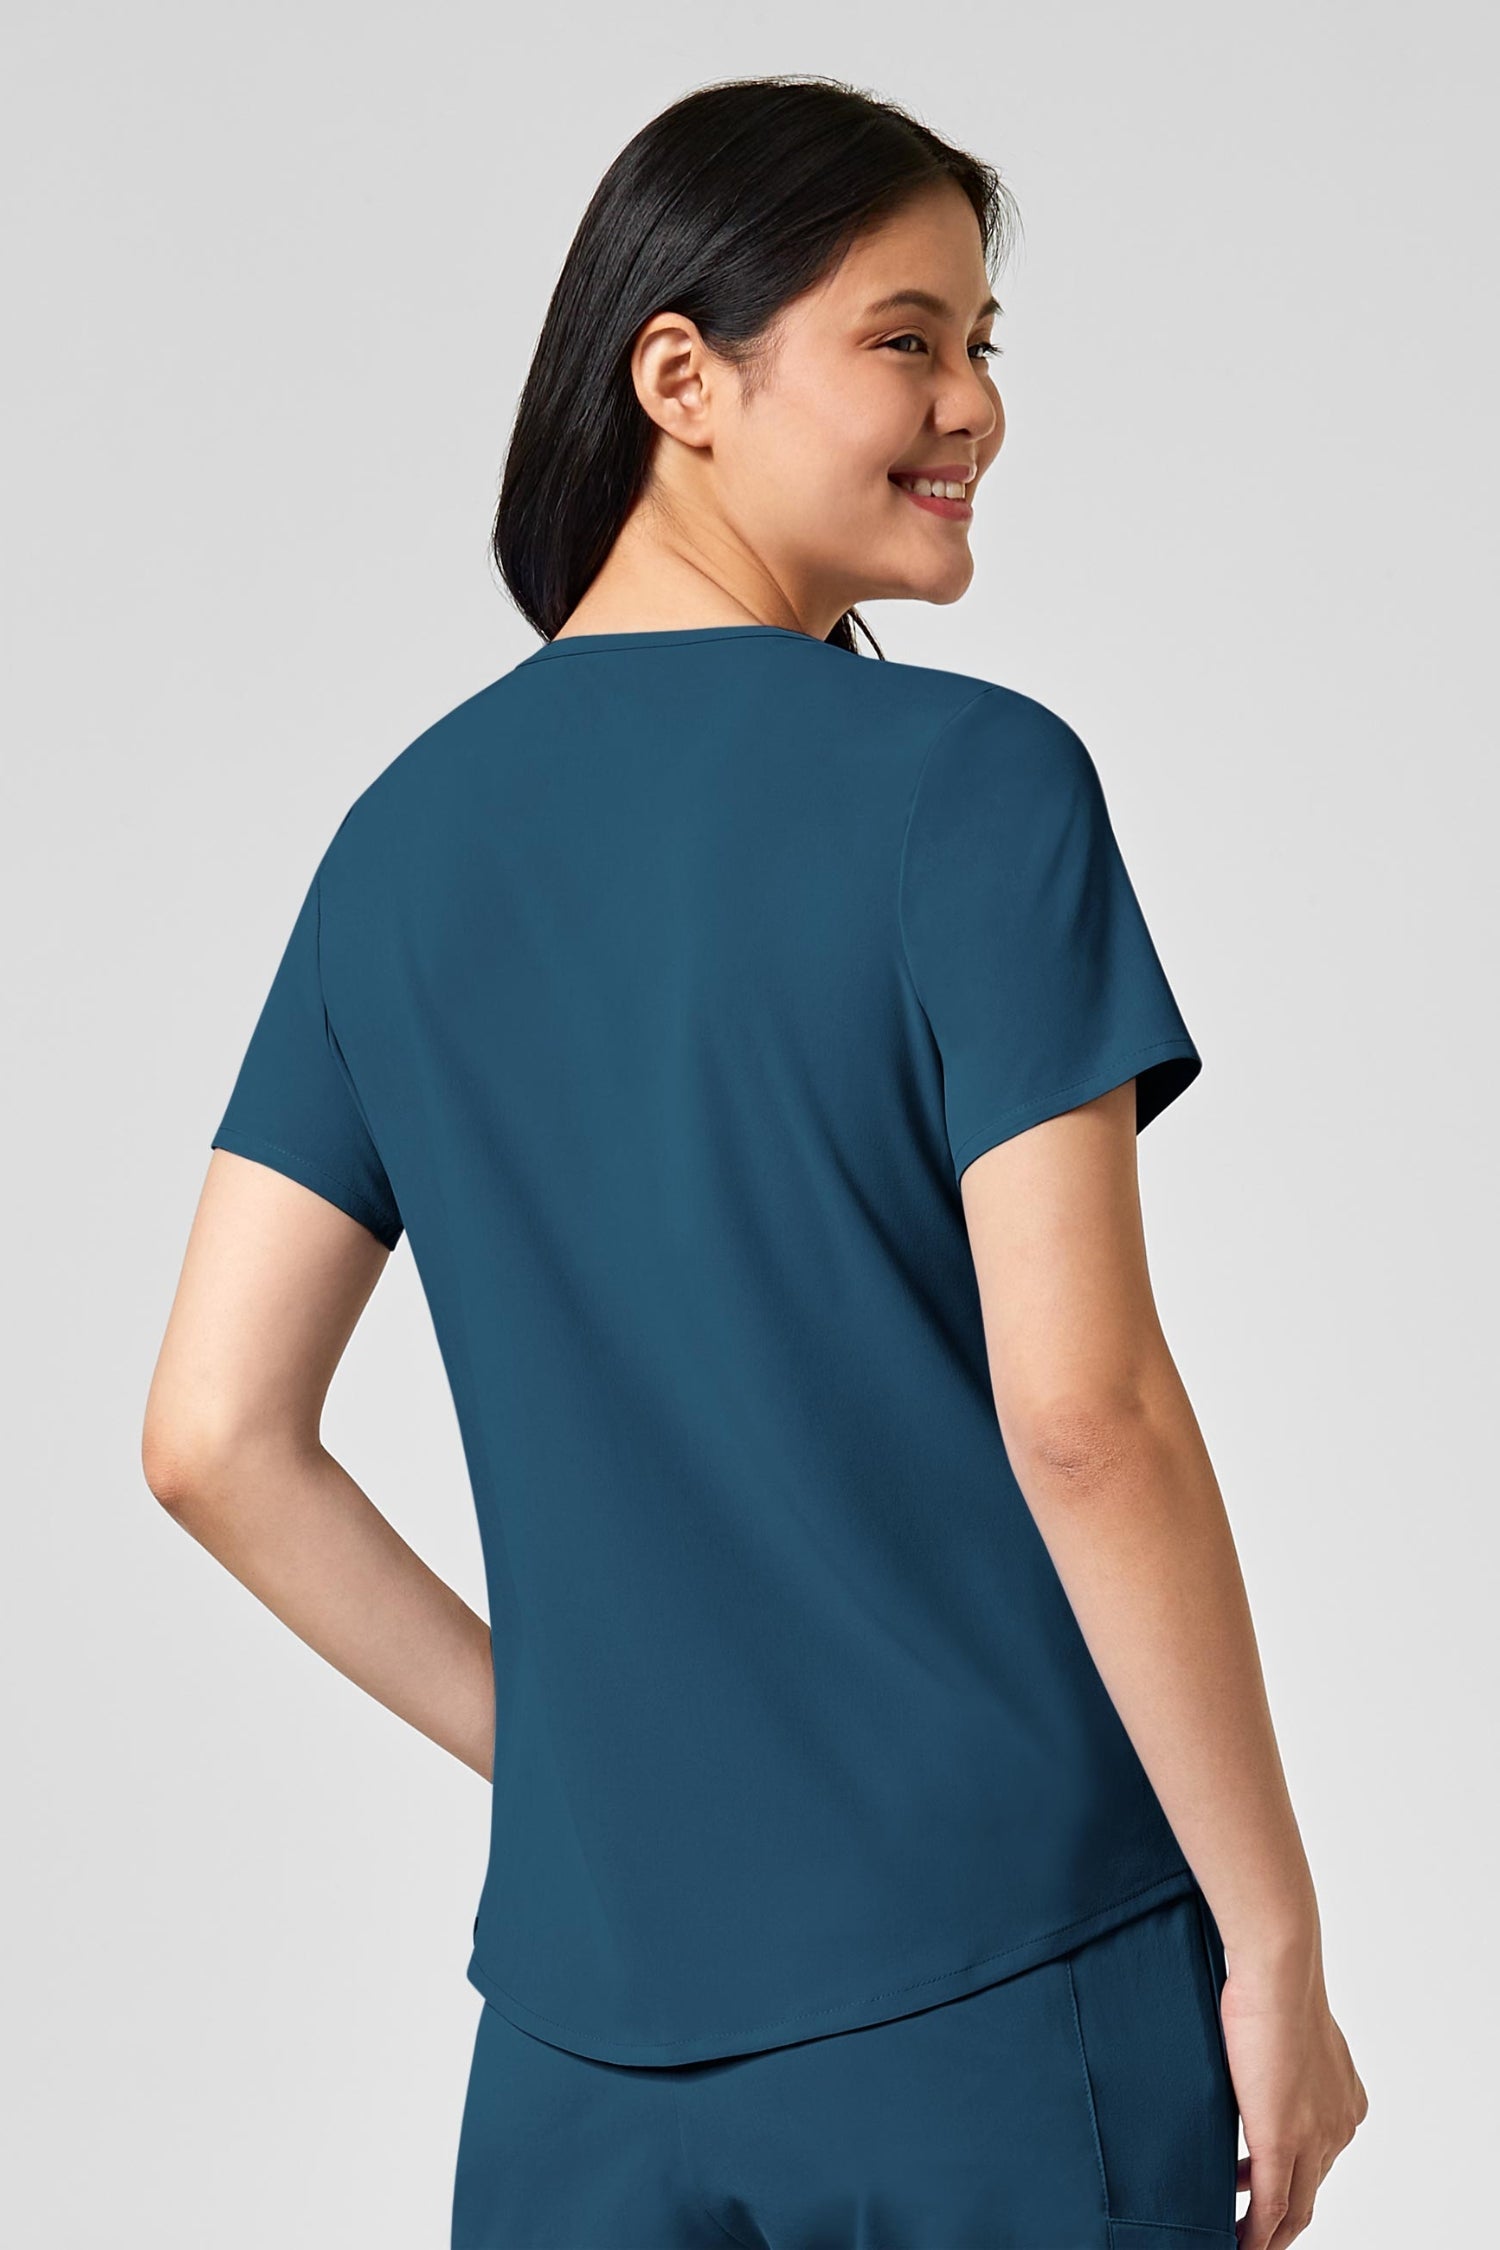 Femme en tenue médicale polyester spandex bleu turquoise, poches à fermeture